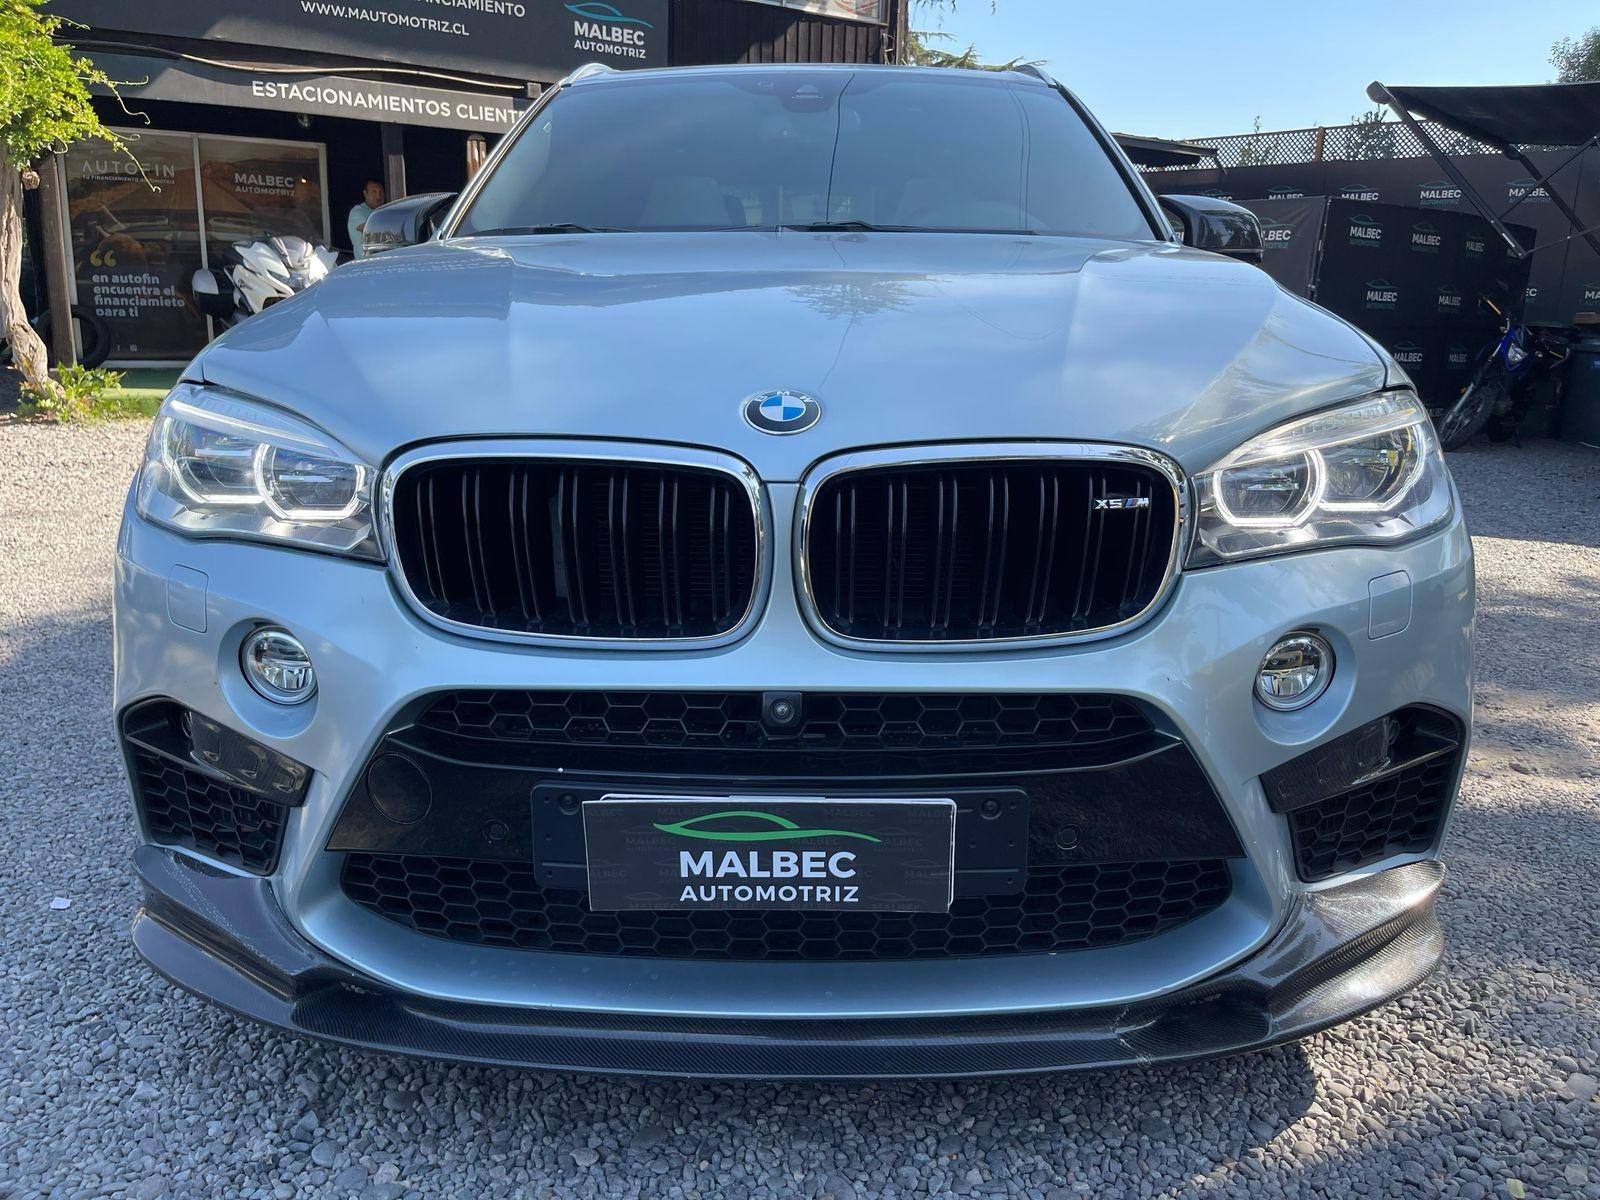 BMW X5 M 2018 4.400 CC - MALBEC AUTOMOTRIZ